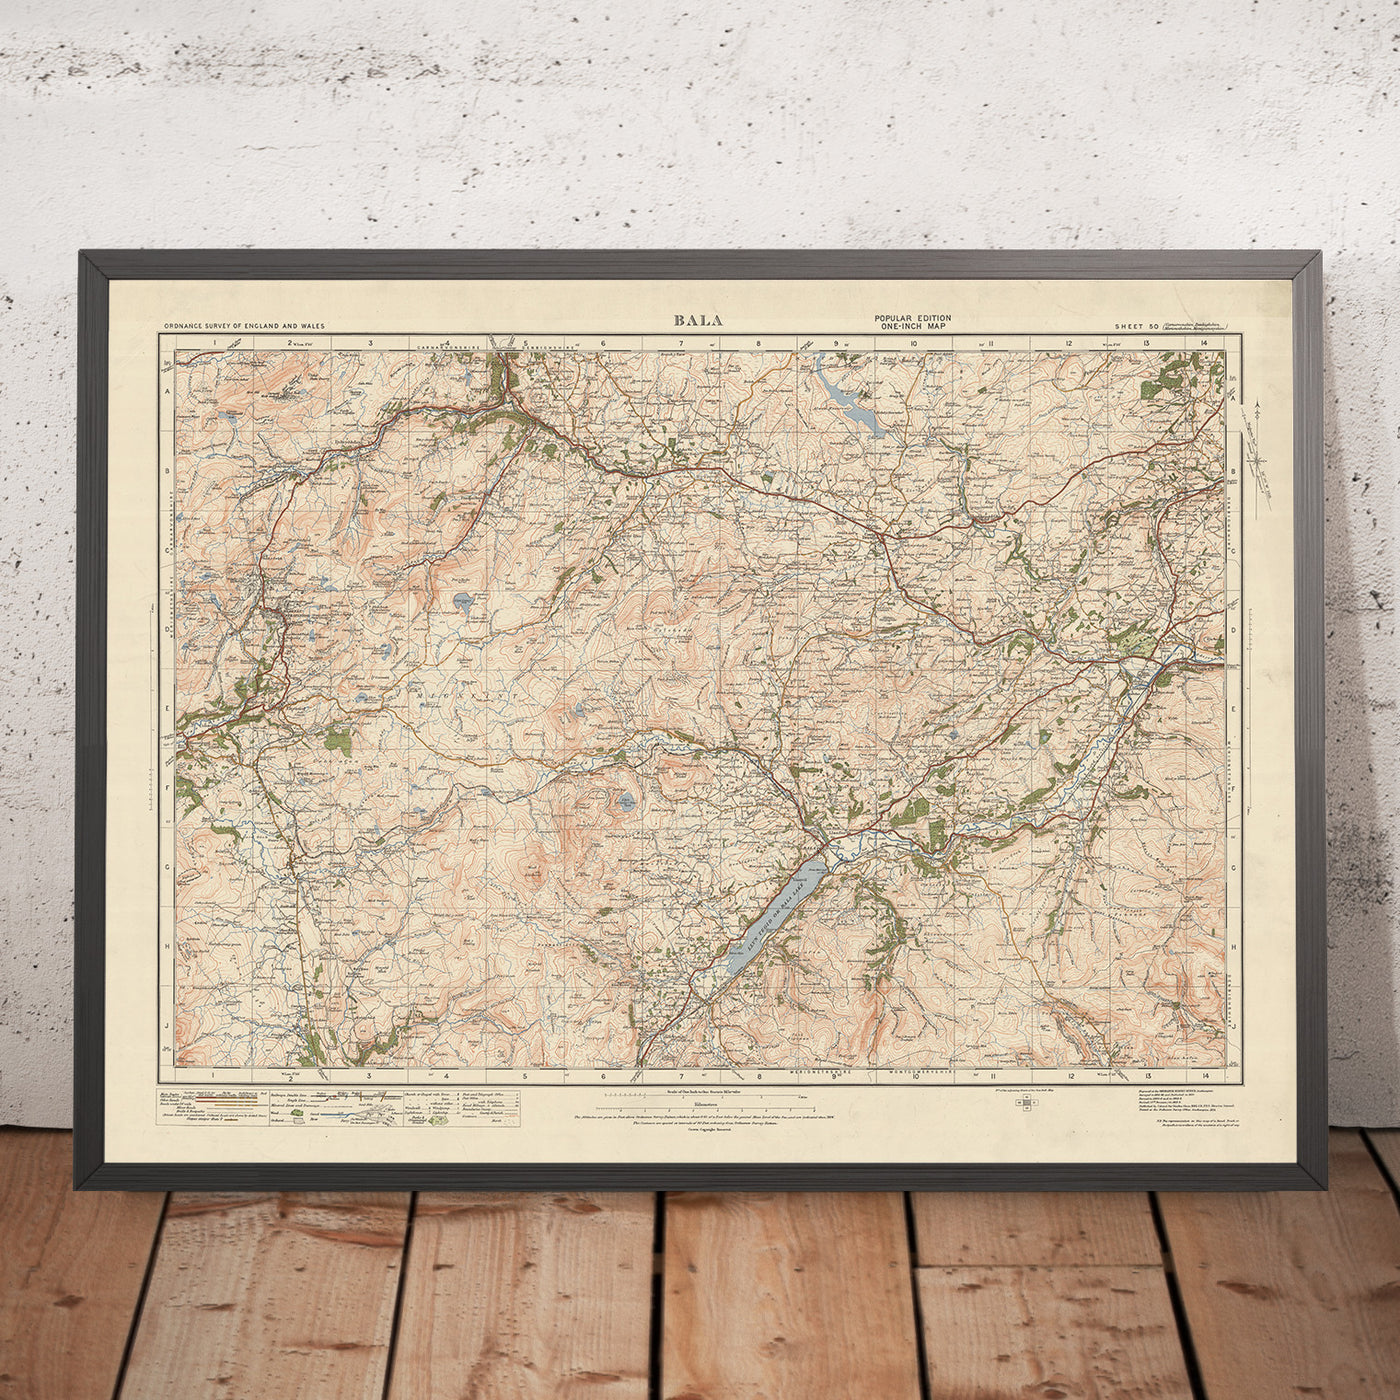 Old Ordnance Survey Map, Sheet 50 - Bala, 1925: Corwen, Blaenau Ffestiniog, Trawsfynydd, Coed y Brenin Forest Park, Eryri National Park (Snowdonia)